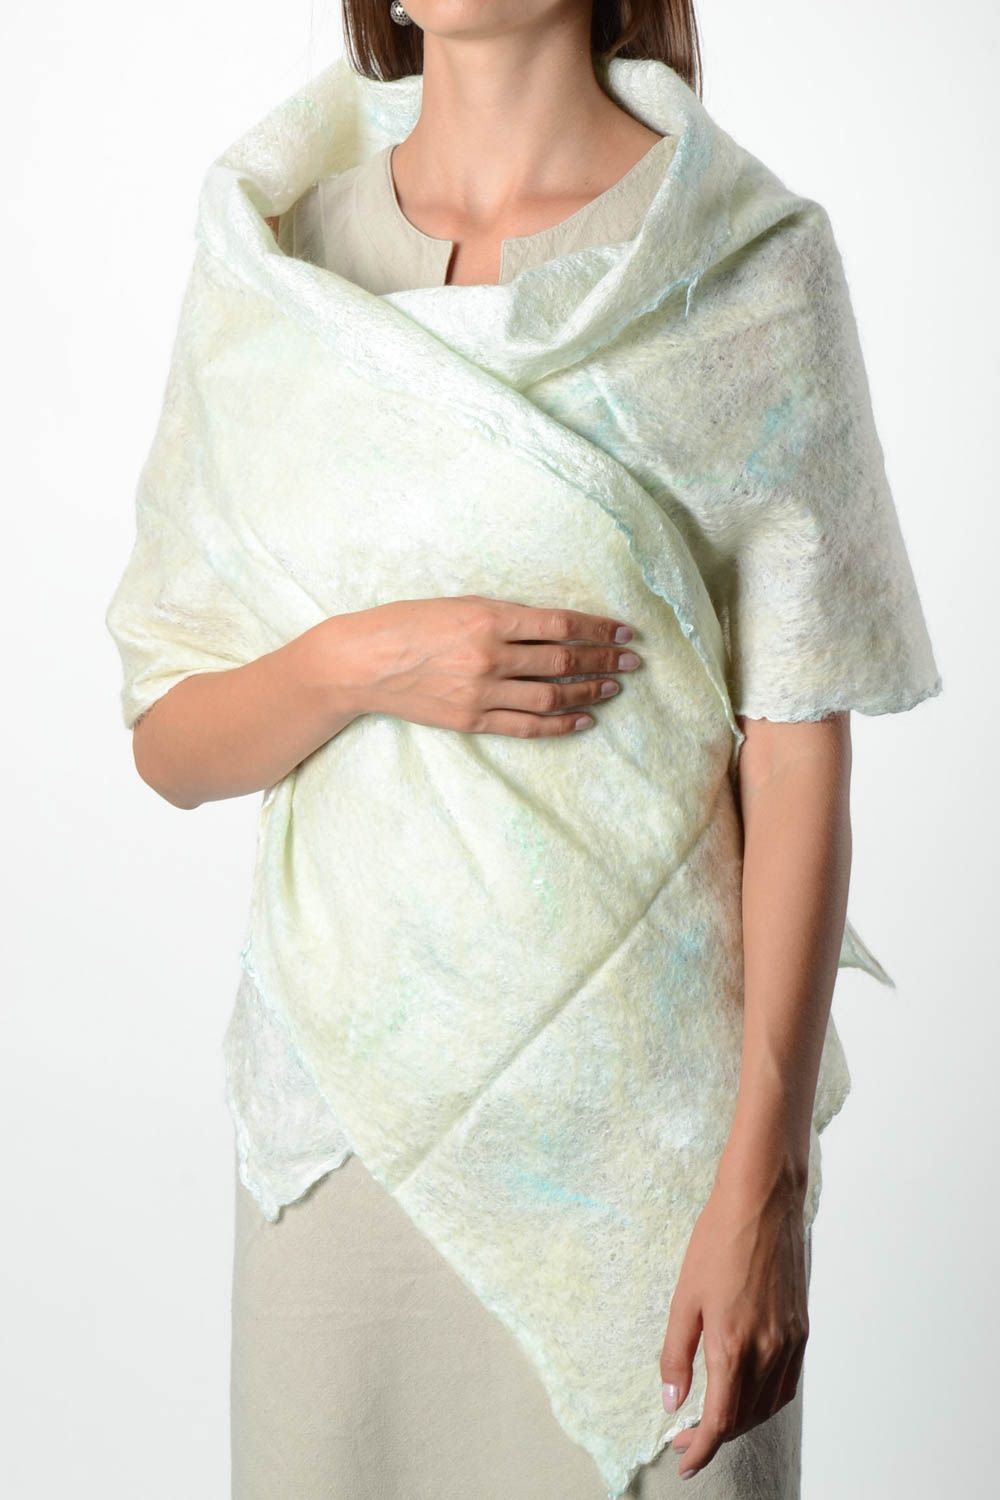 Pañuelo de seda hecho a mano regalo original para mujer chal artesanal foto 1